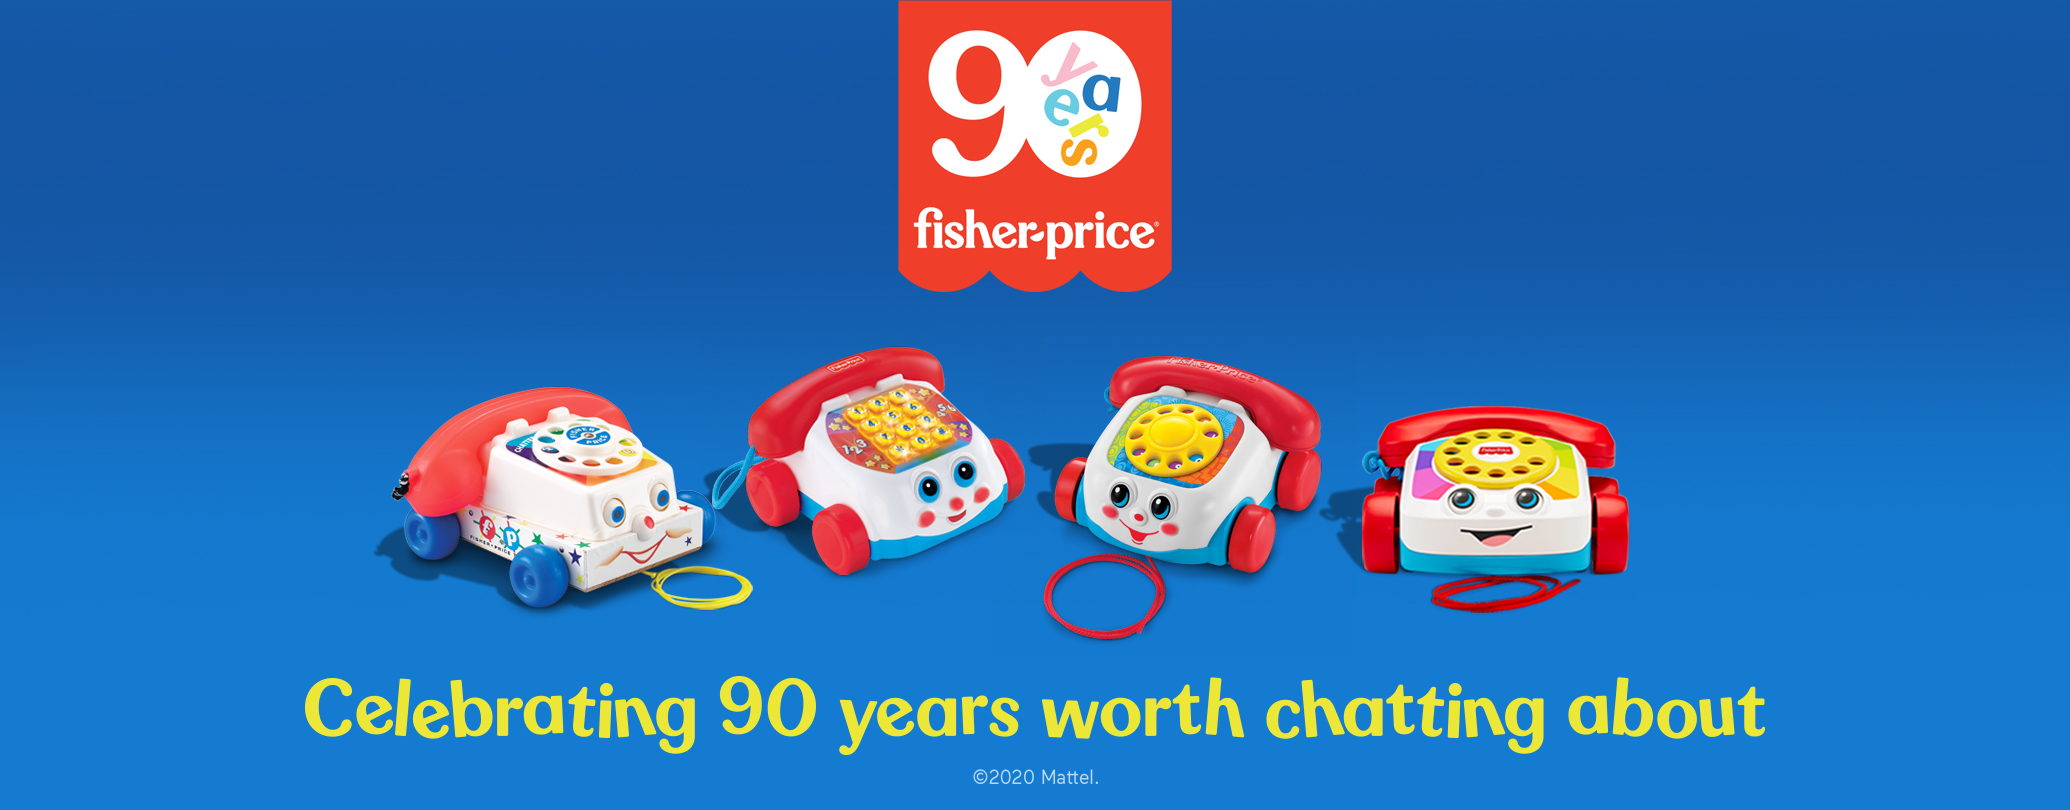 Fisher price, kleurrijk, speelgoed, 90 jaar